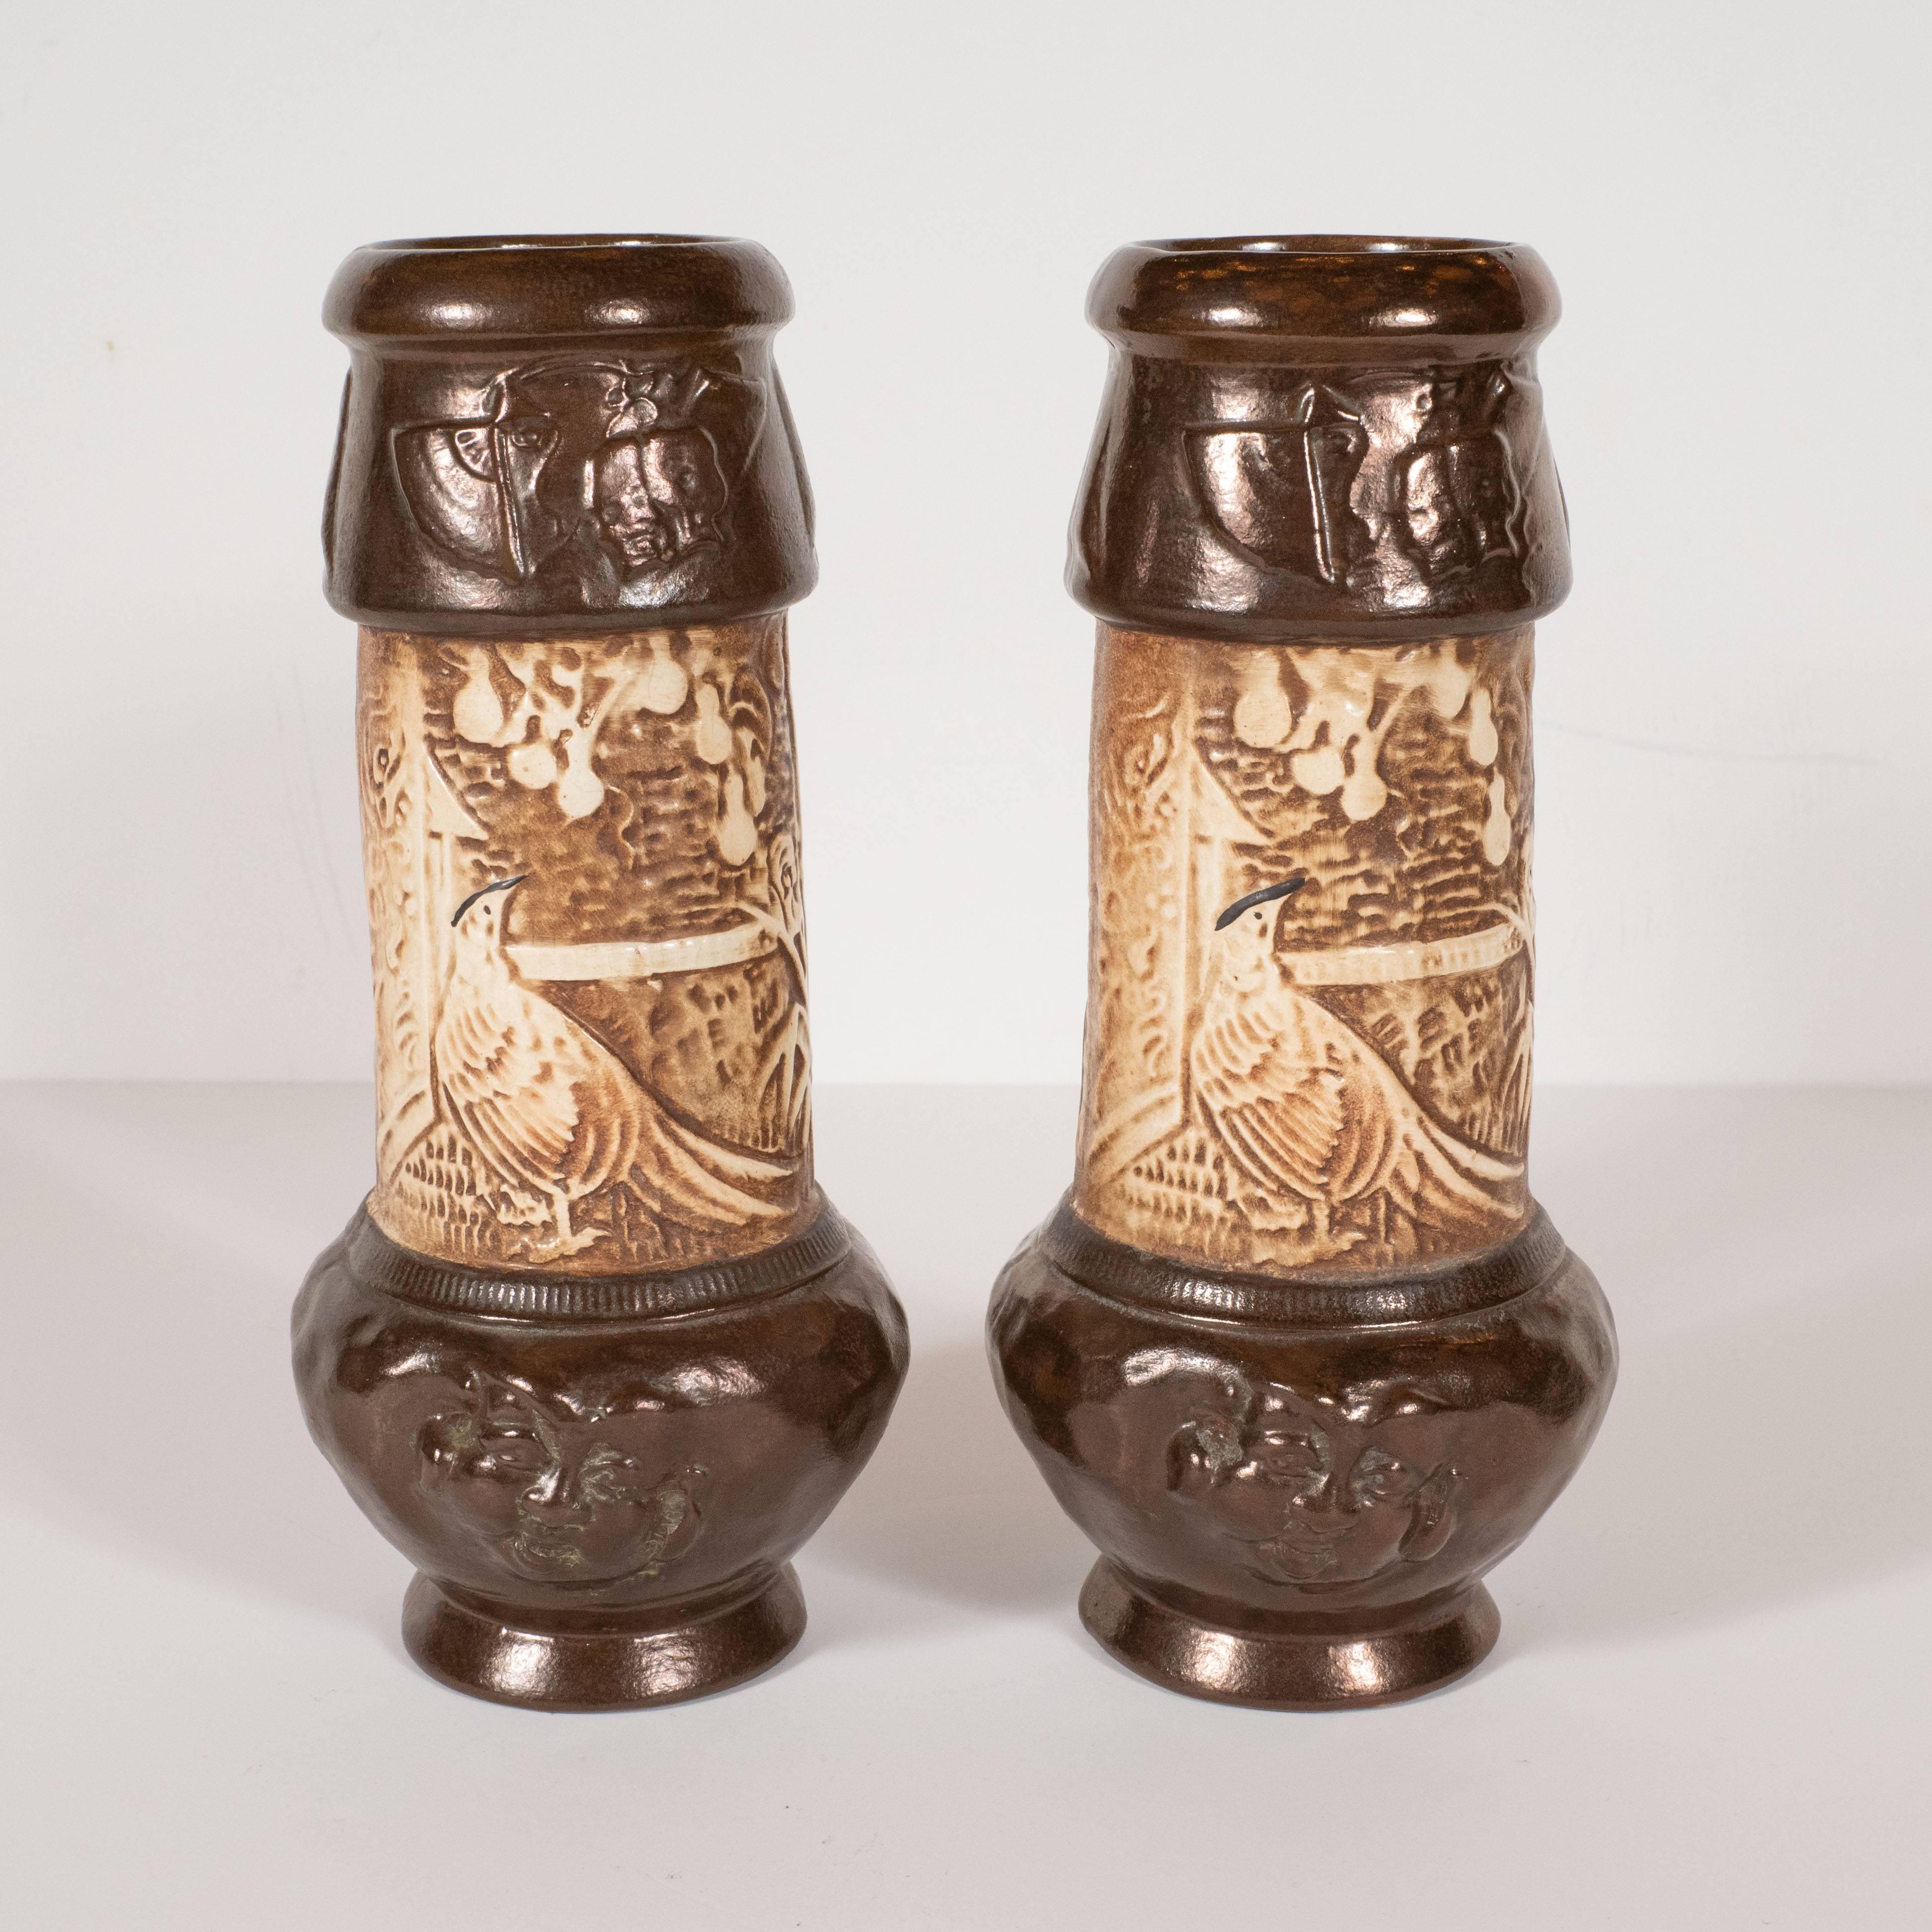 Cette paire de vases sophistiqués en céramique peinte à la main a été réalisée par l'estimable studio de poterie britannique du début du XXe siècle, Bretby. Peints à la main dans des tons chocolat foncé et crème, ils représentent des interprétations